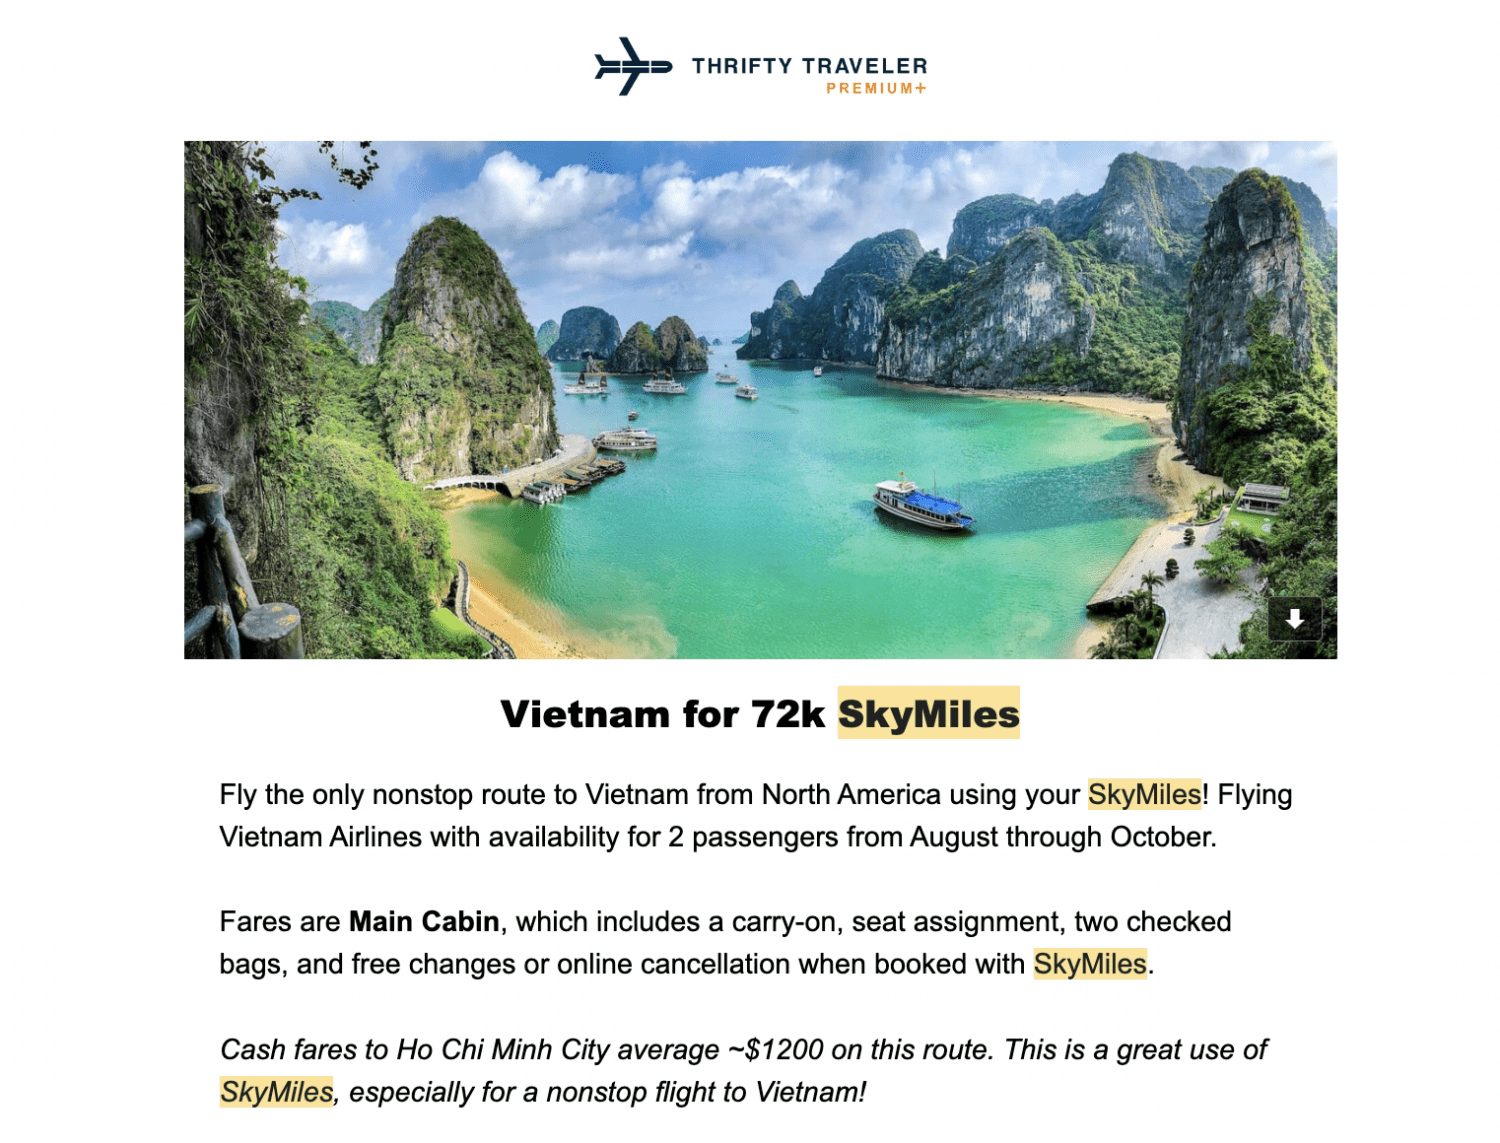 Thrifty Traveler Premium Delta Skymiles flash sale flight deal alert to Vietnam